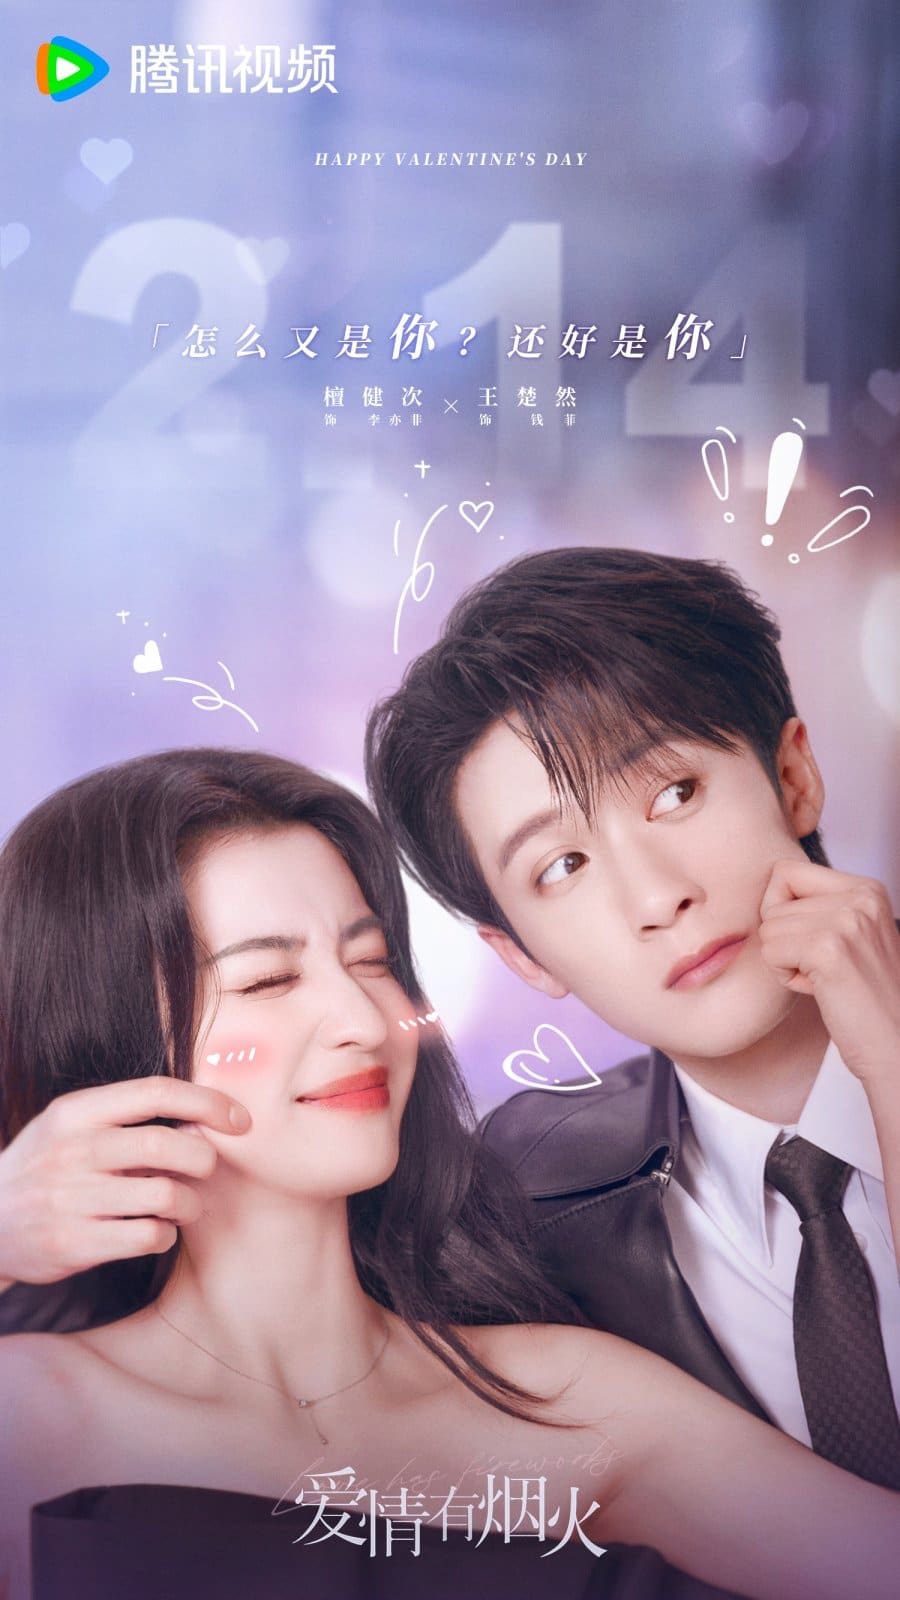 Постер к Дню всех влюблённых с Ван Чу Жань и Тань Цзян Цы к дораме "Фейерверк любви"